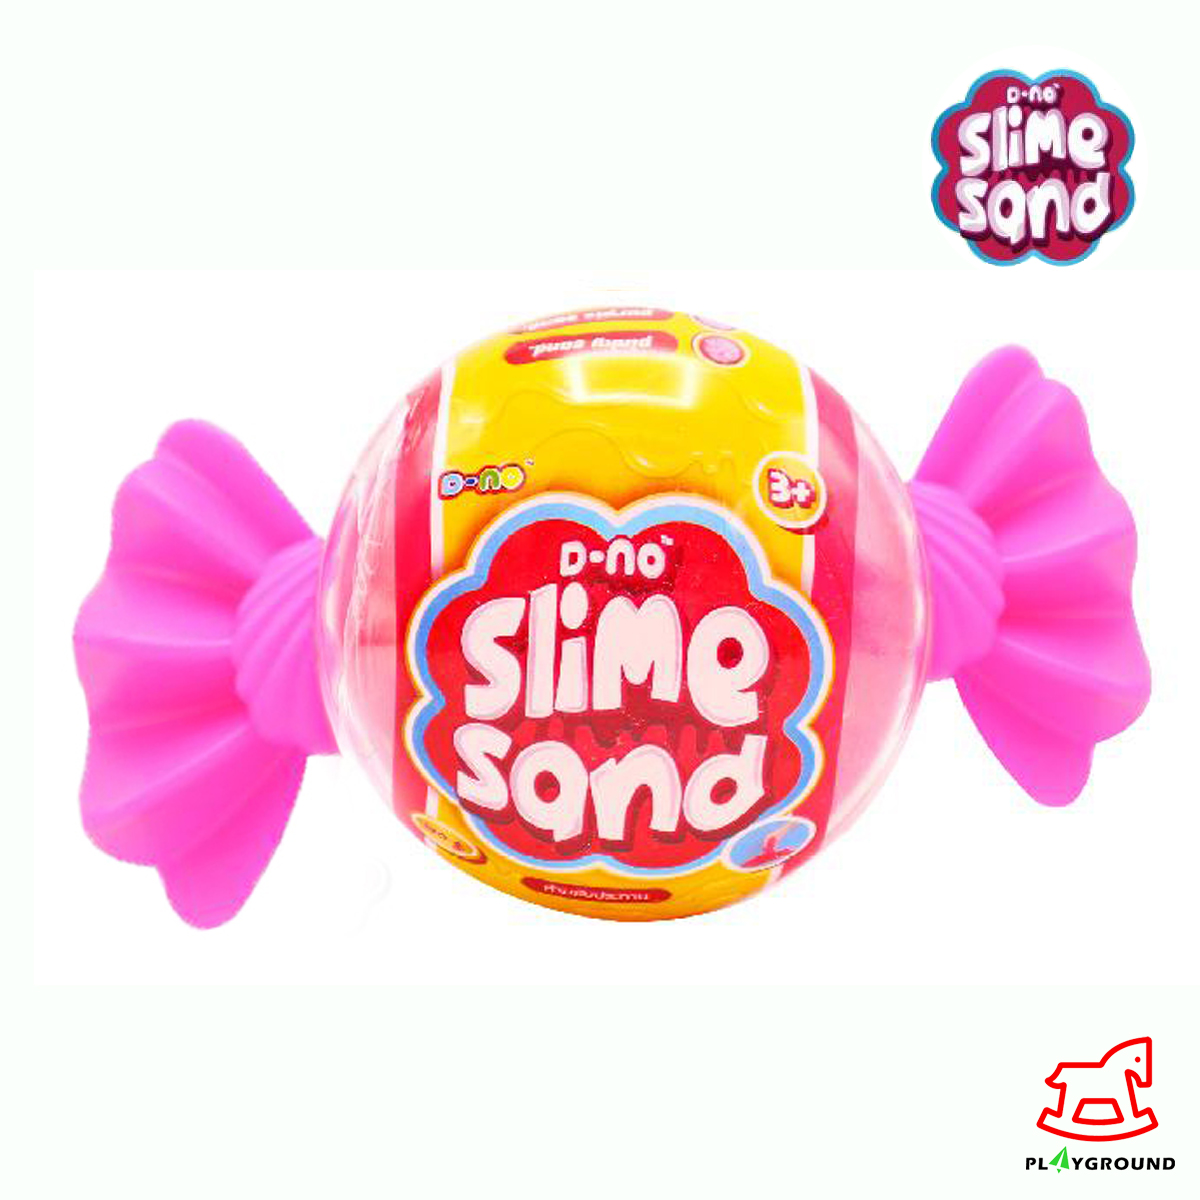 ของเล่น ทรายปั้นสีชมพู DNS158 D-NO Slime Sand Play_Ground Toy สไลม์ มี 5 สีให้สะสม สีชมพู